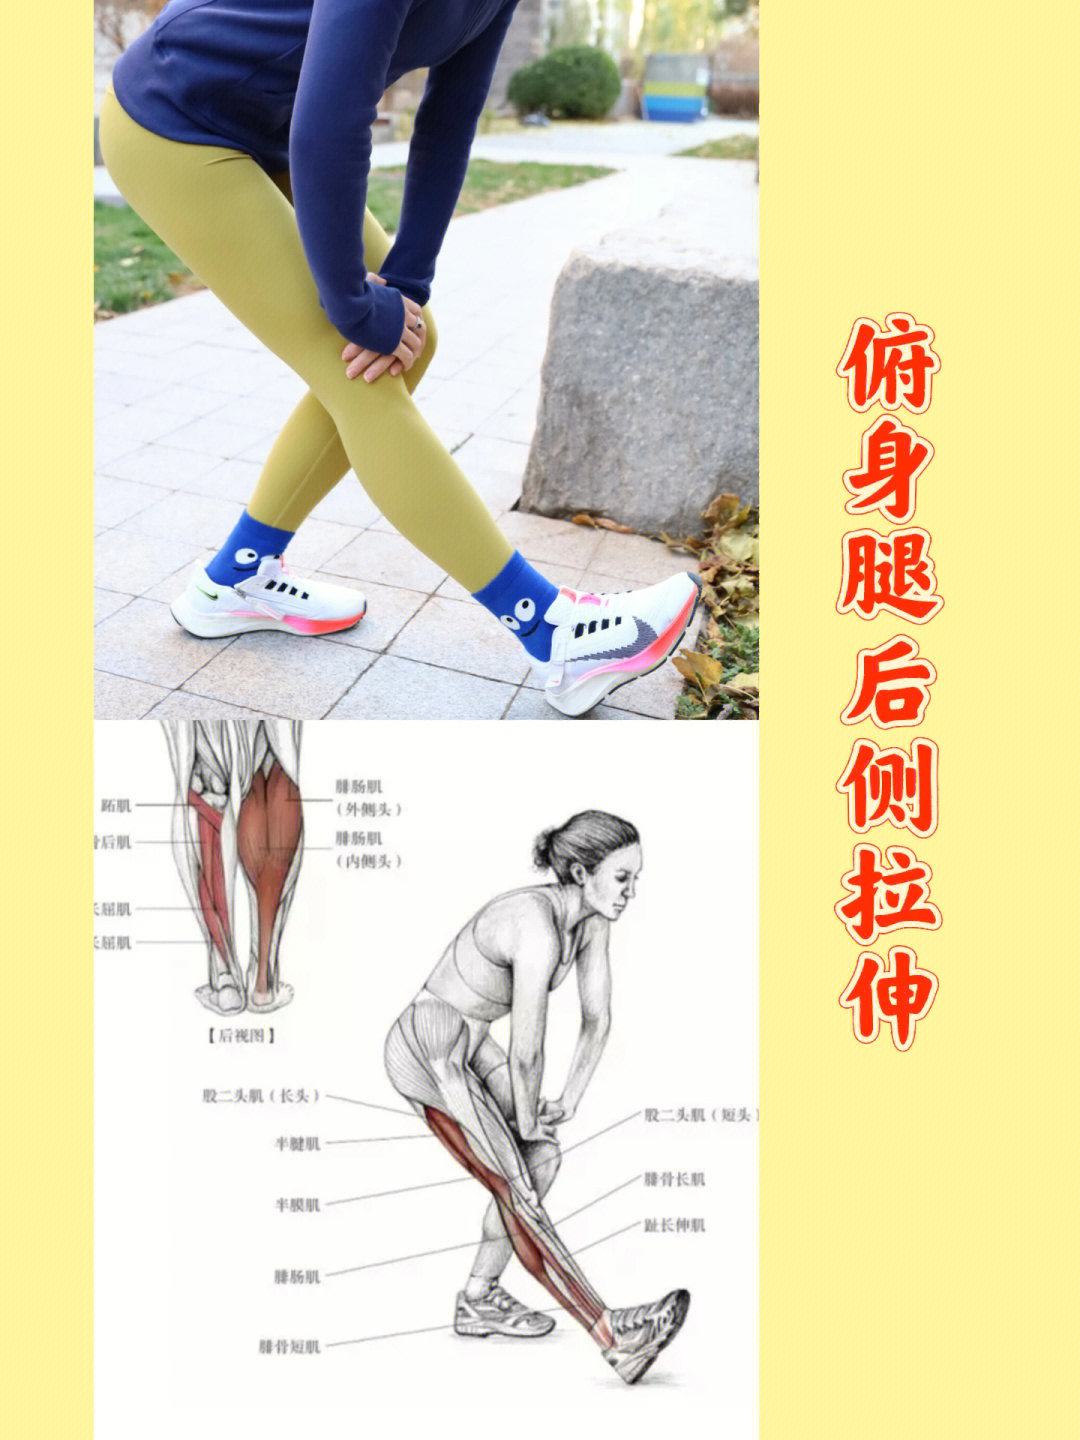 73图一:俯身腿后侧拉伸这个动作可以同时拉伸腿部后侧肌肉,不仅大腿